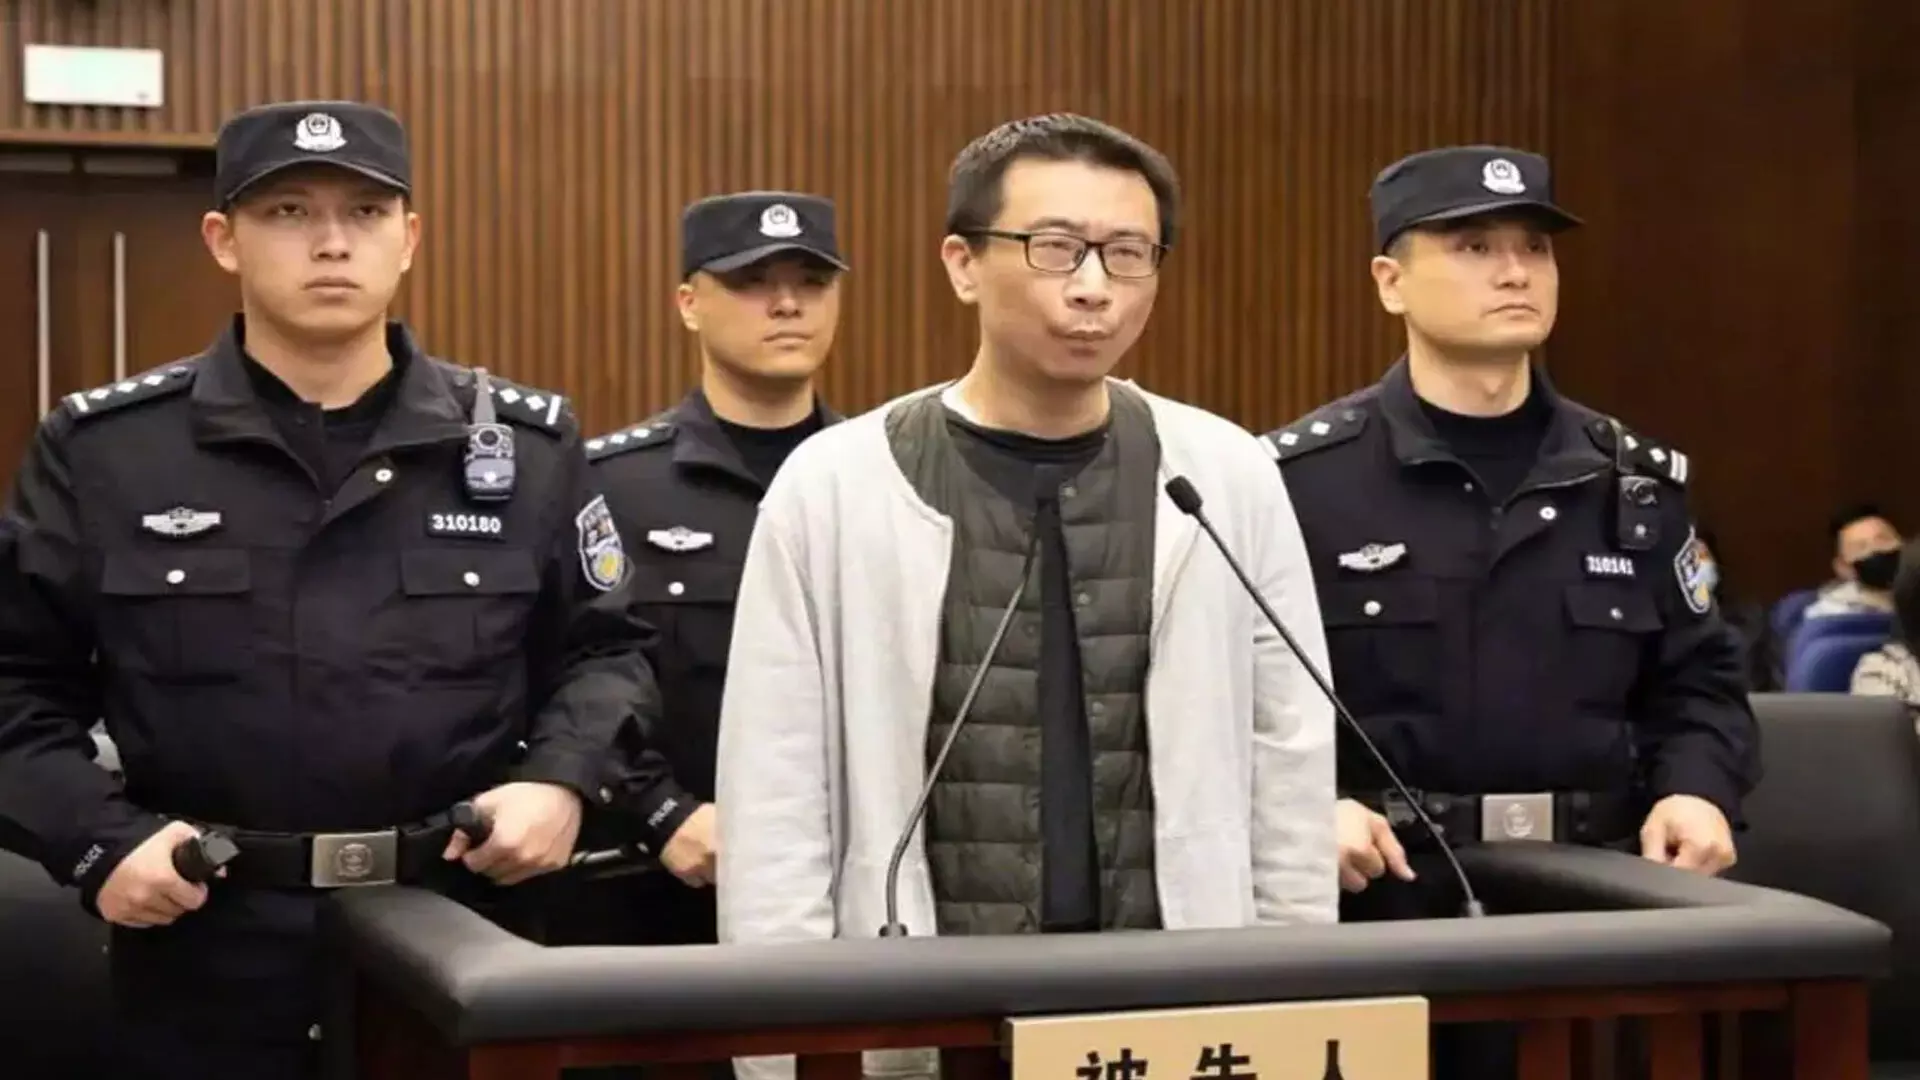 एक चीनी गेमिंग एक्जीक्यूटिव ने नेटफ्लिक्स निर्माता की हत्या की योजना बनाई